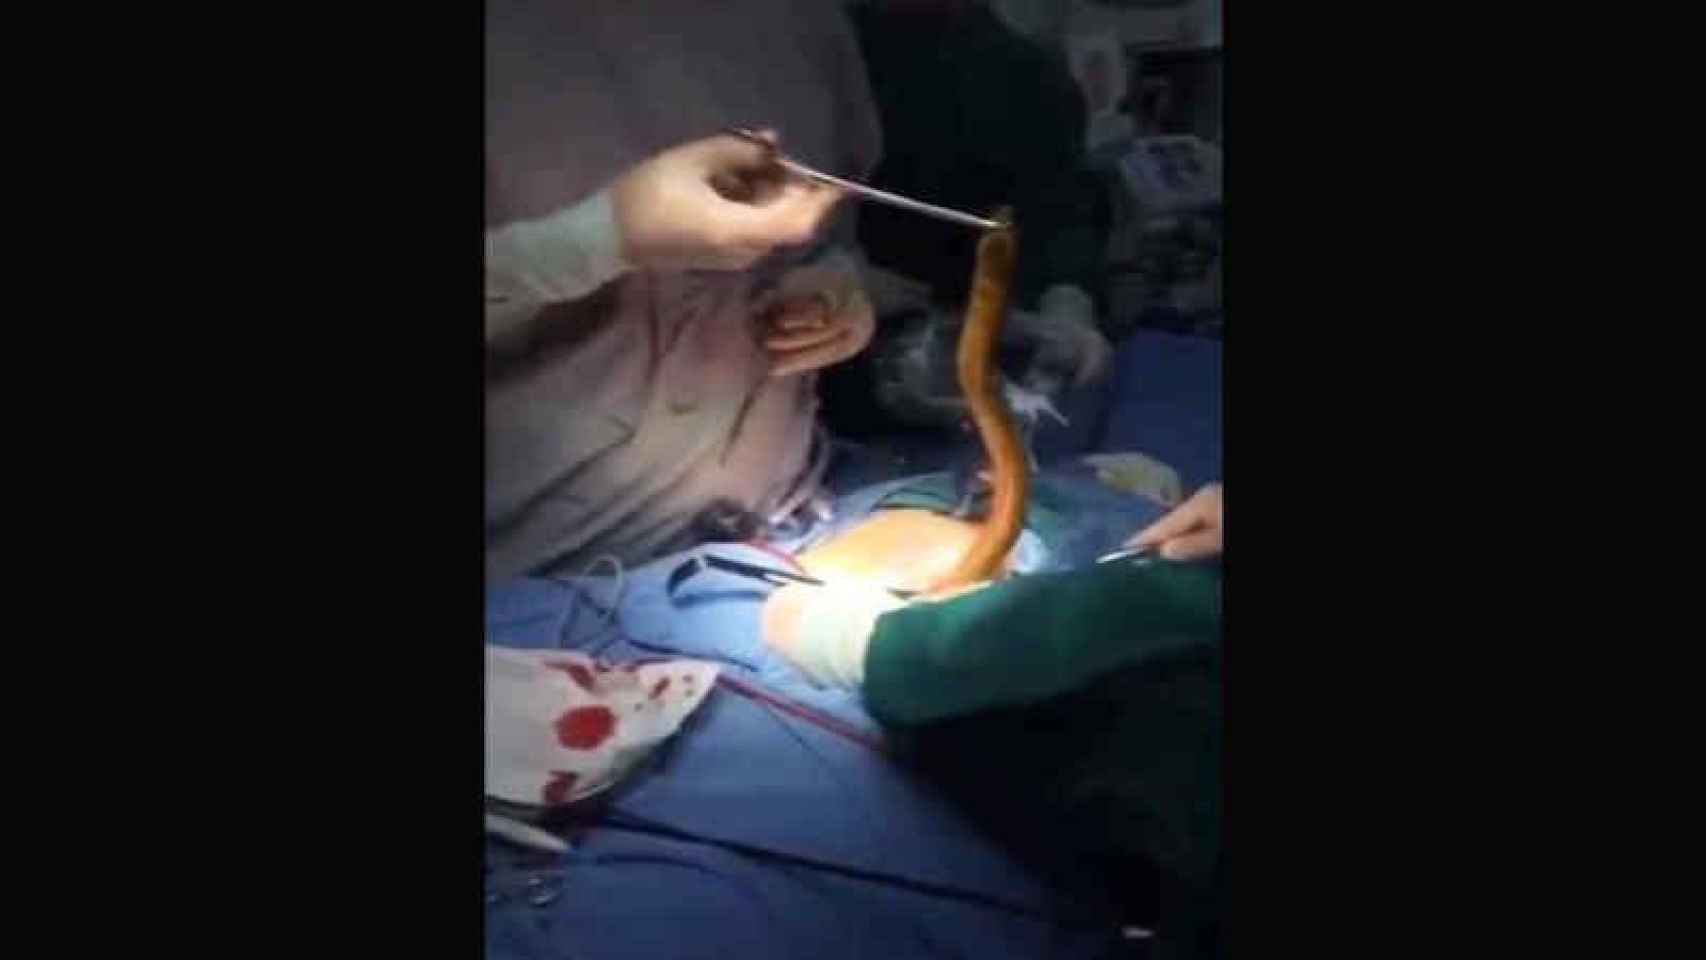 La anguila seguía viva en el estómago del paciente